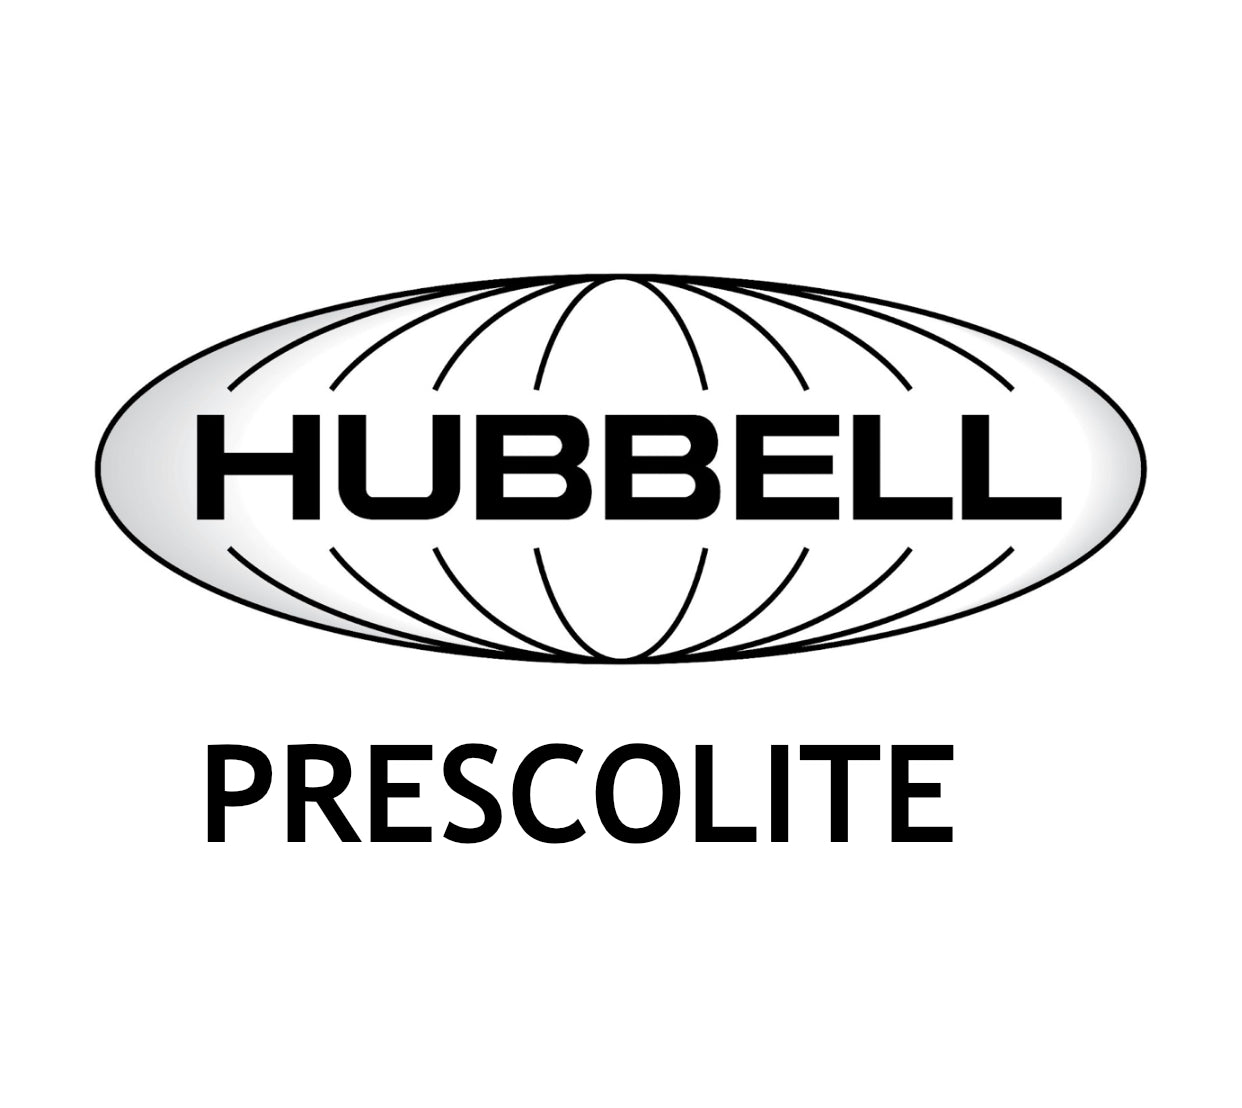 HUBBELL PRESCOLITE